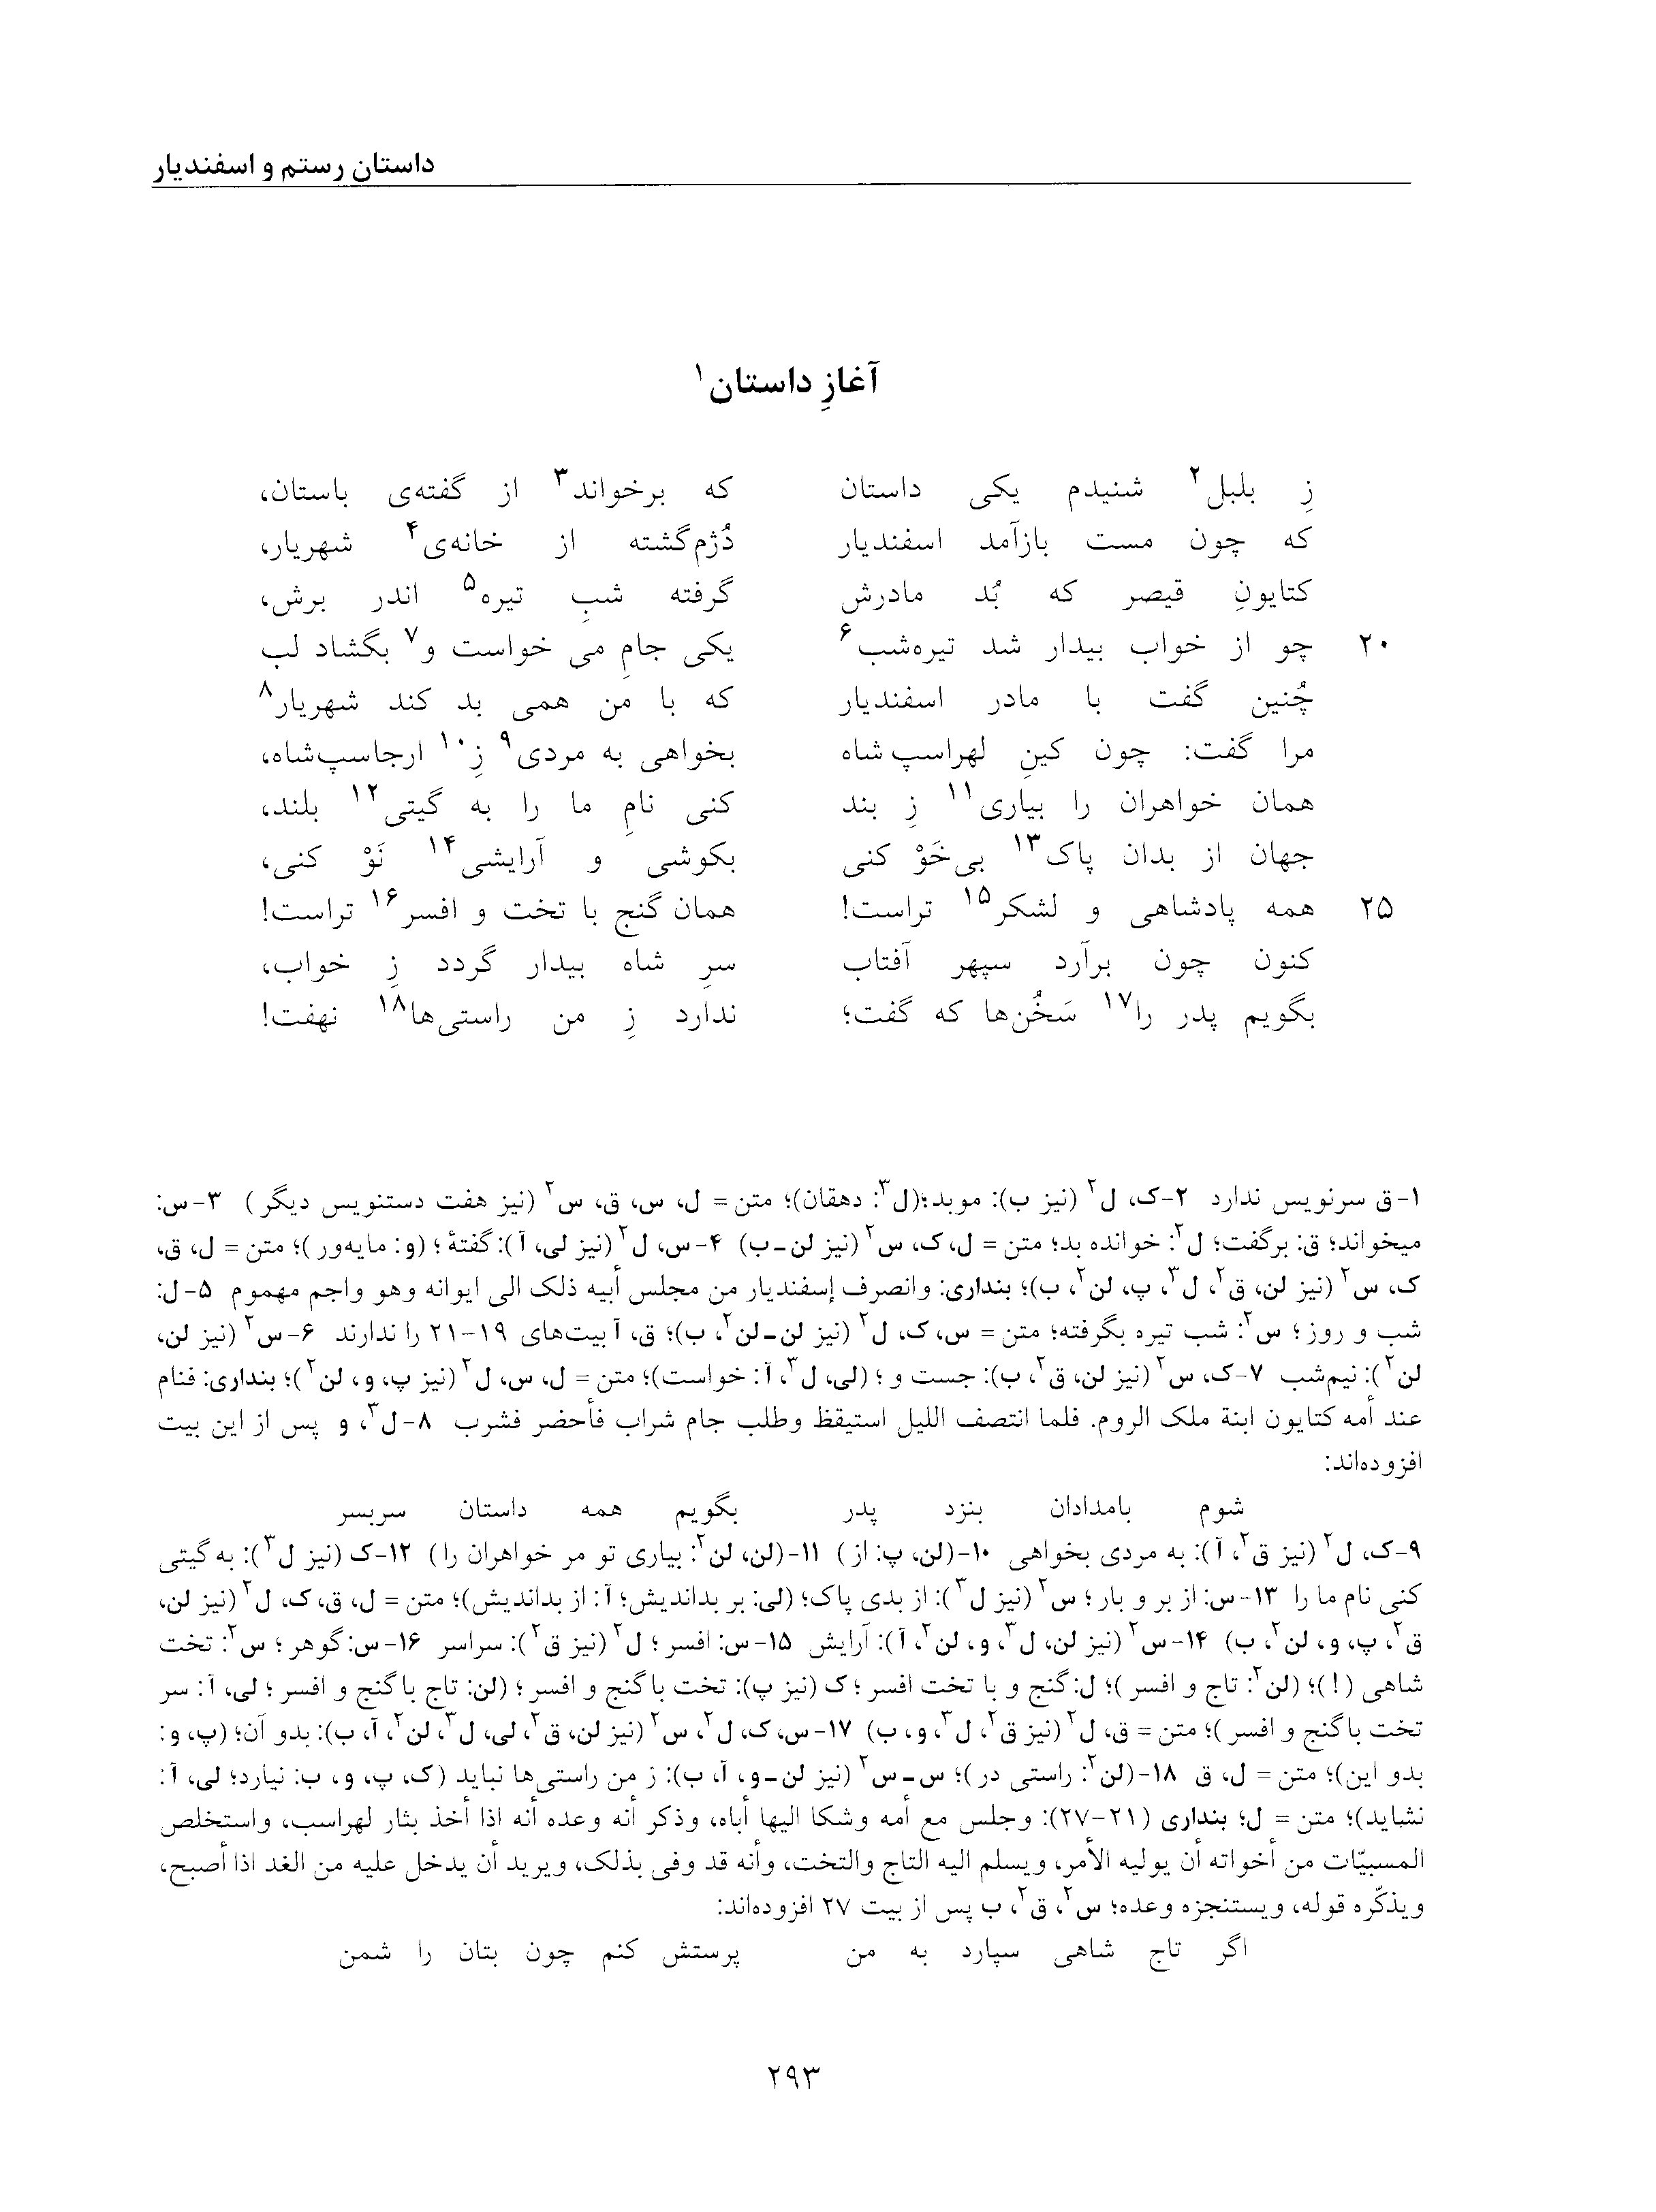 vol. 5, p. 293